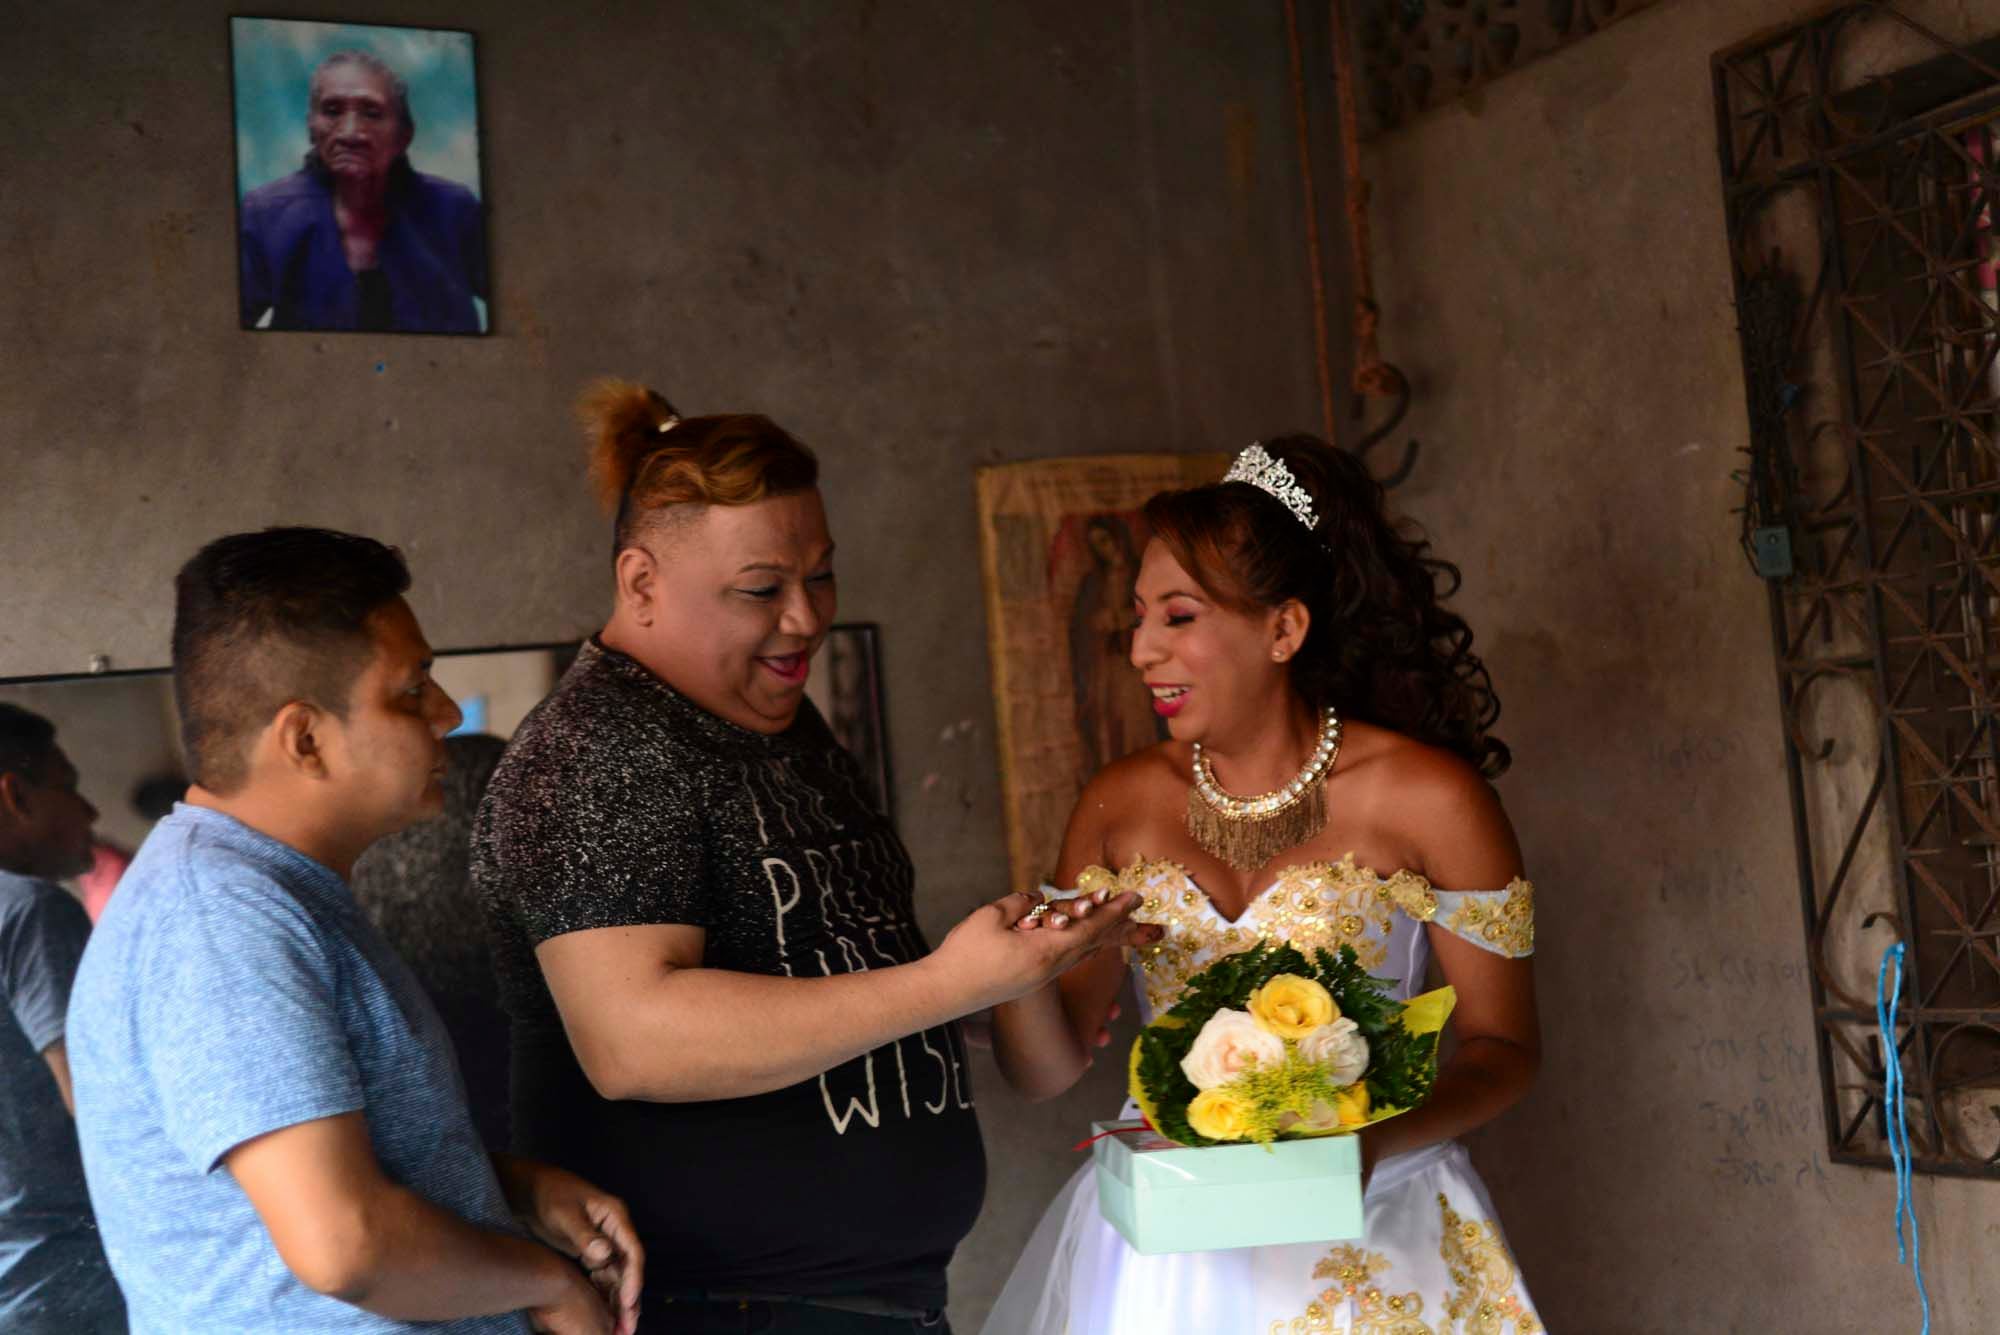 Membros da comunidade se surpreendem com a aliança de “casamento” de Valentina, embaixo de um retrato de sua avó. 